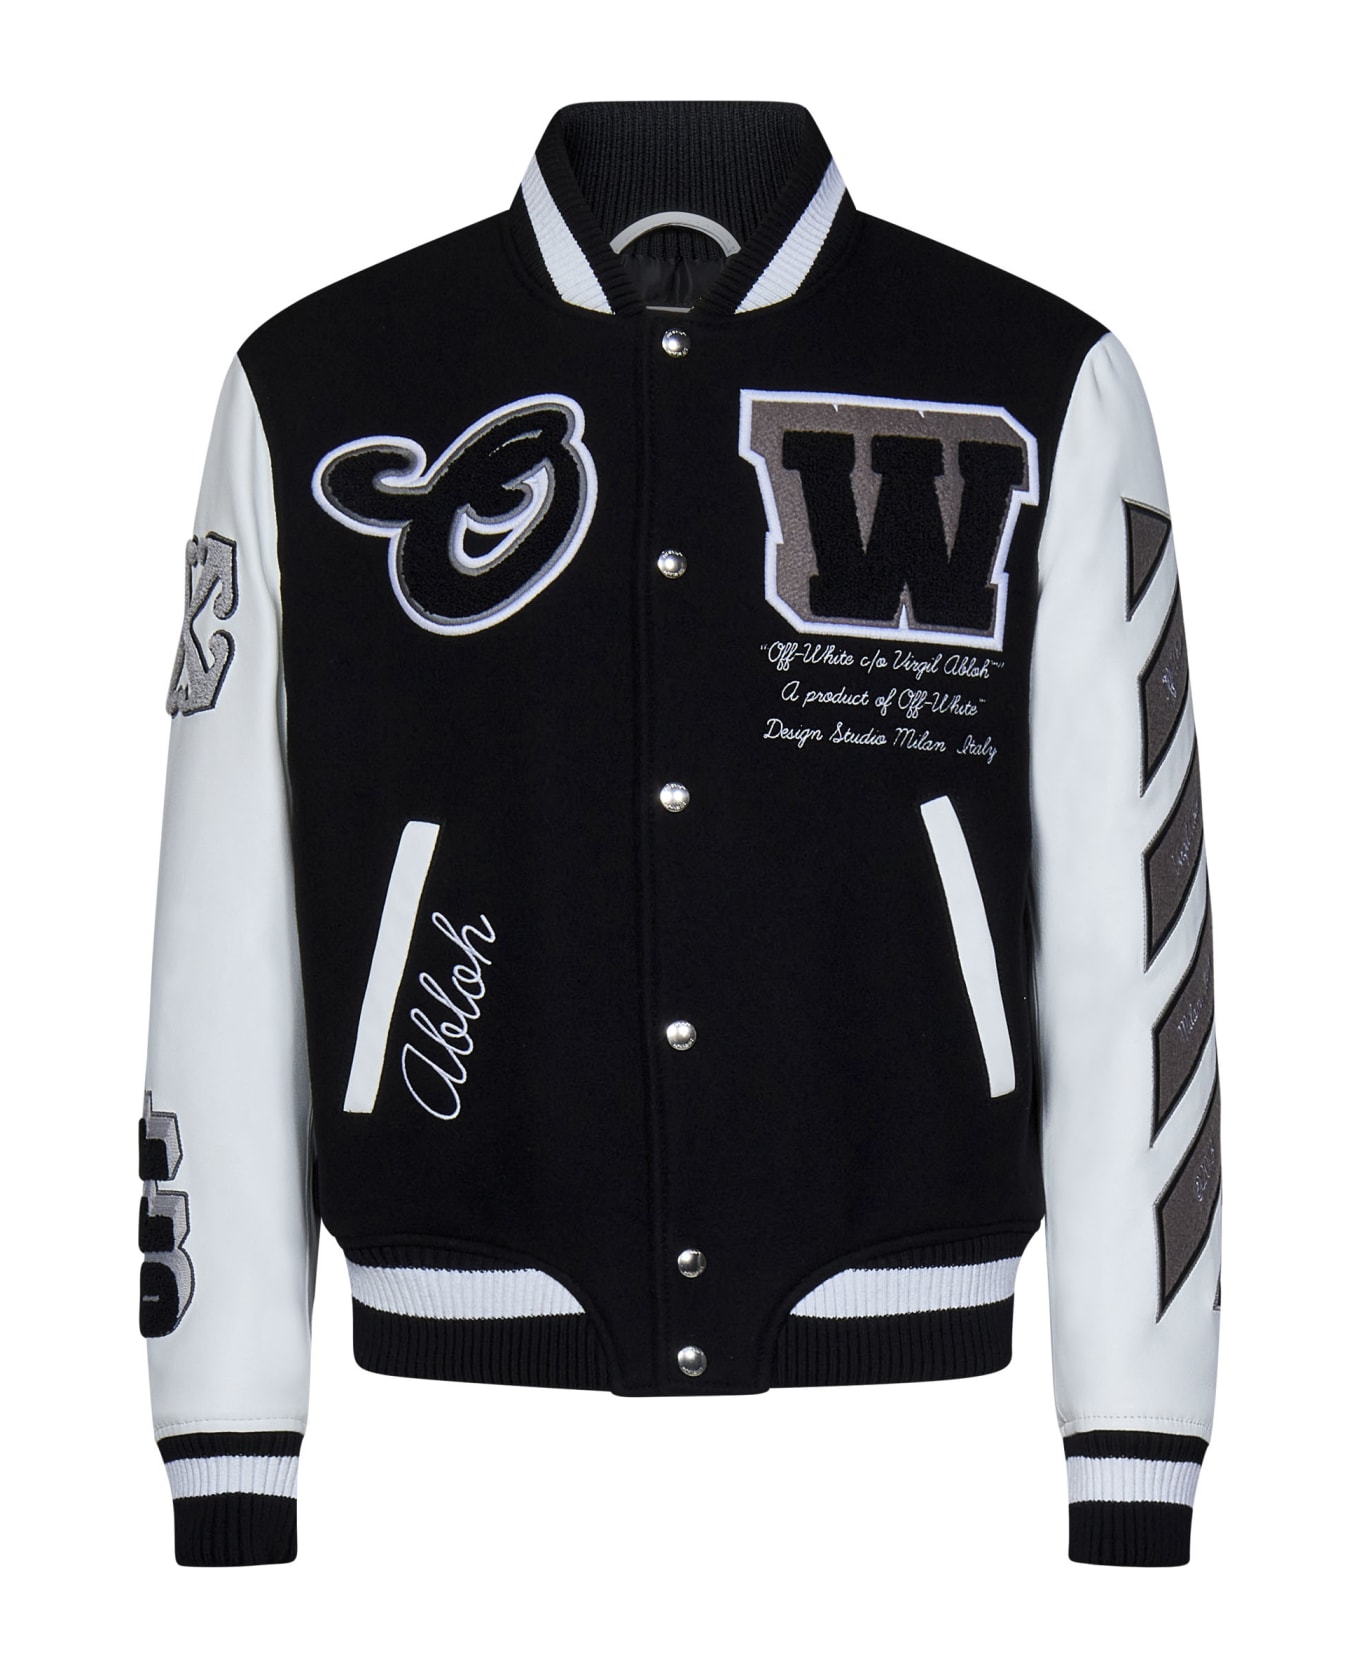 Off-White Varsity Jacket - Black